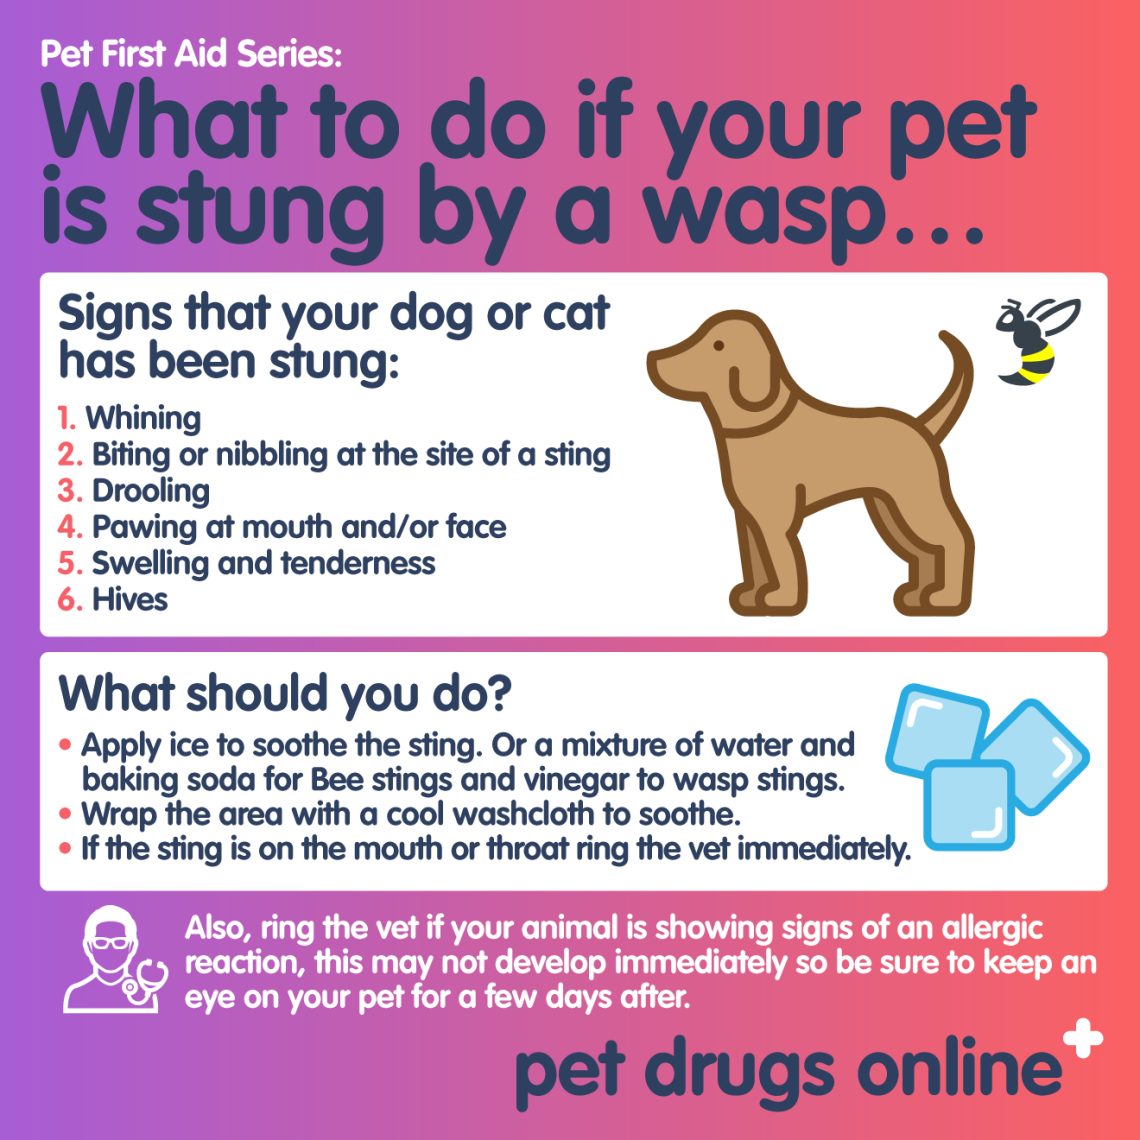 What to do if a dog is bitten by a wasp or a bee?